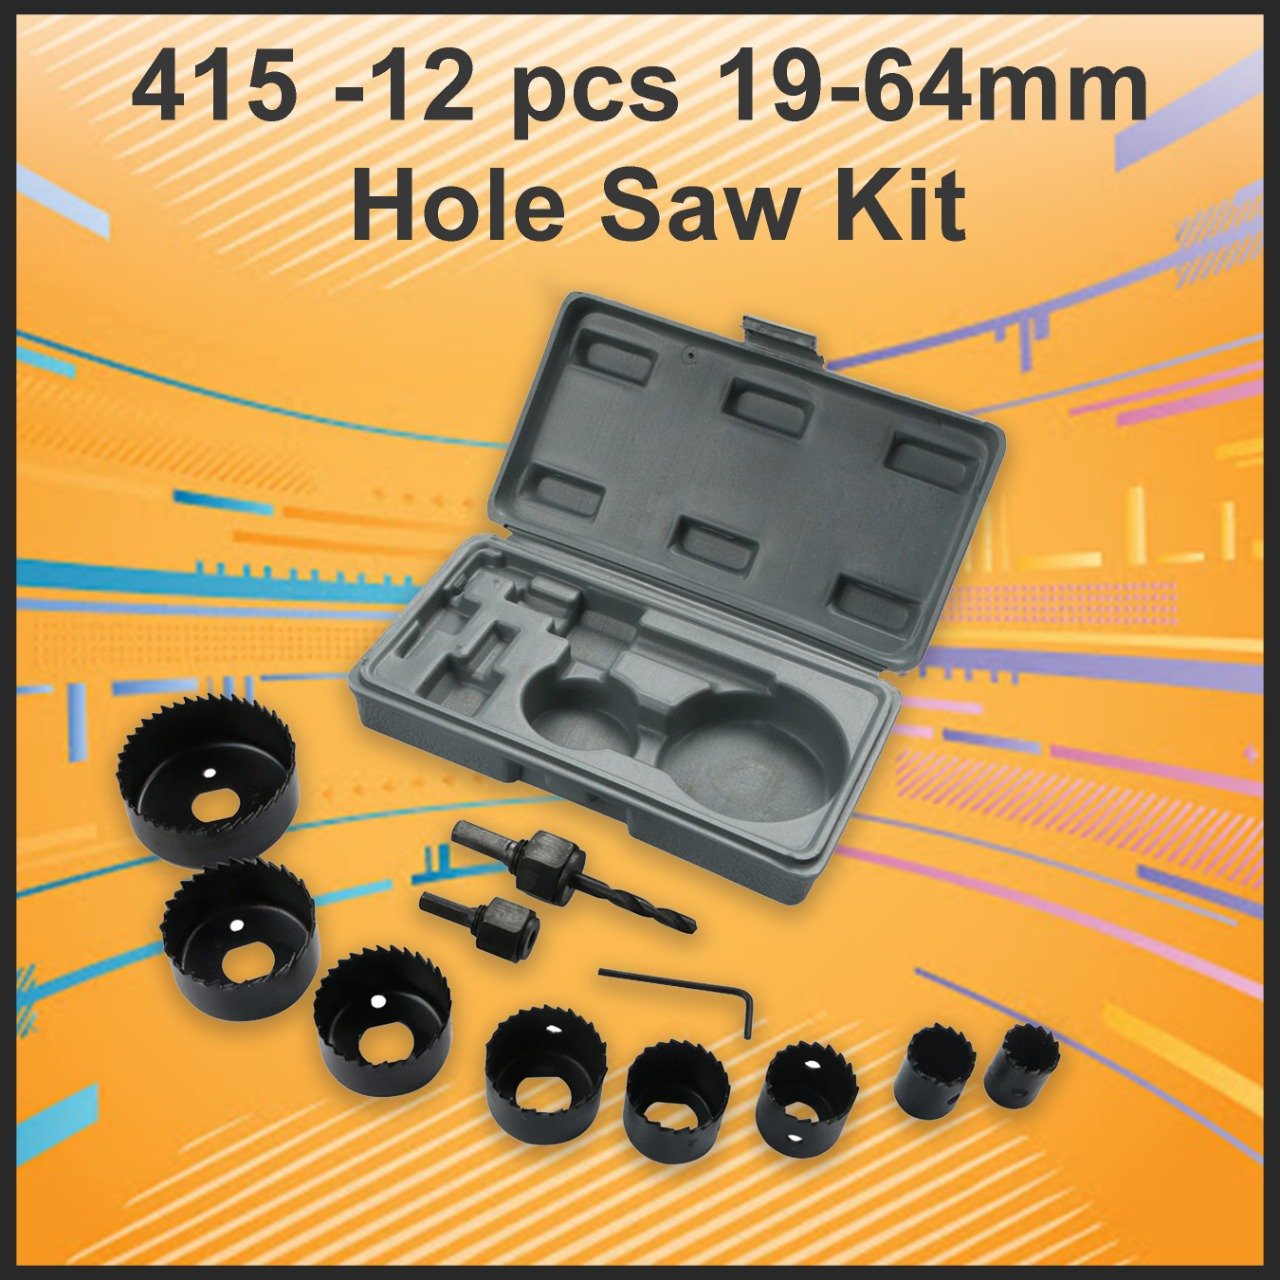 12-pcs-19-64mm-hole-saw-kit